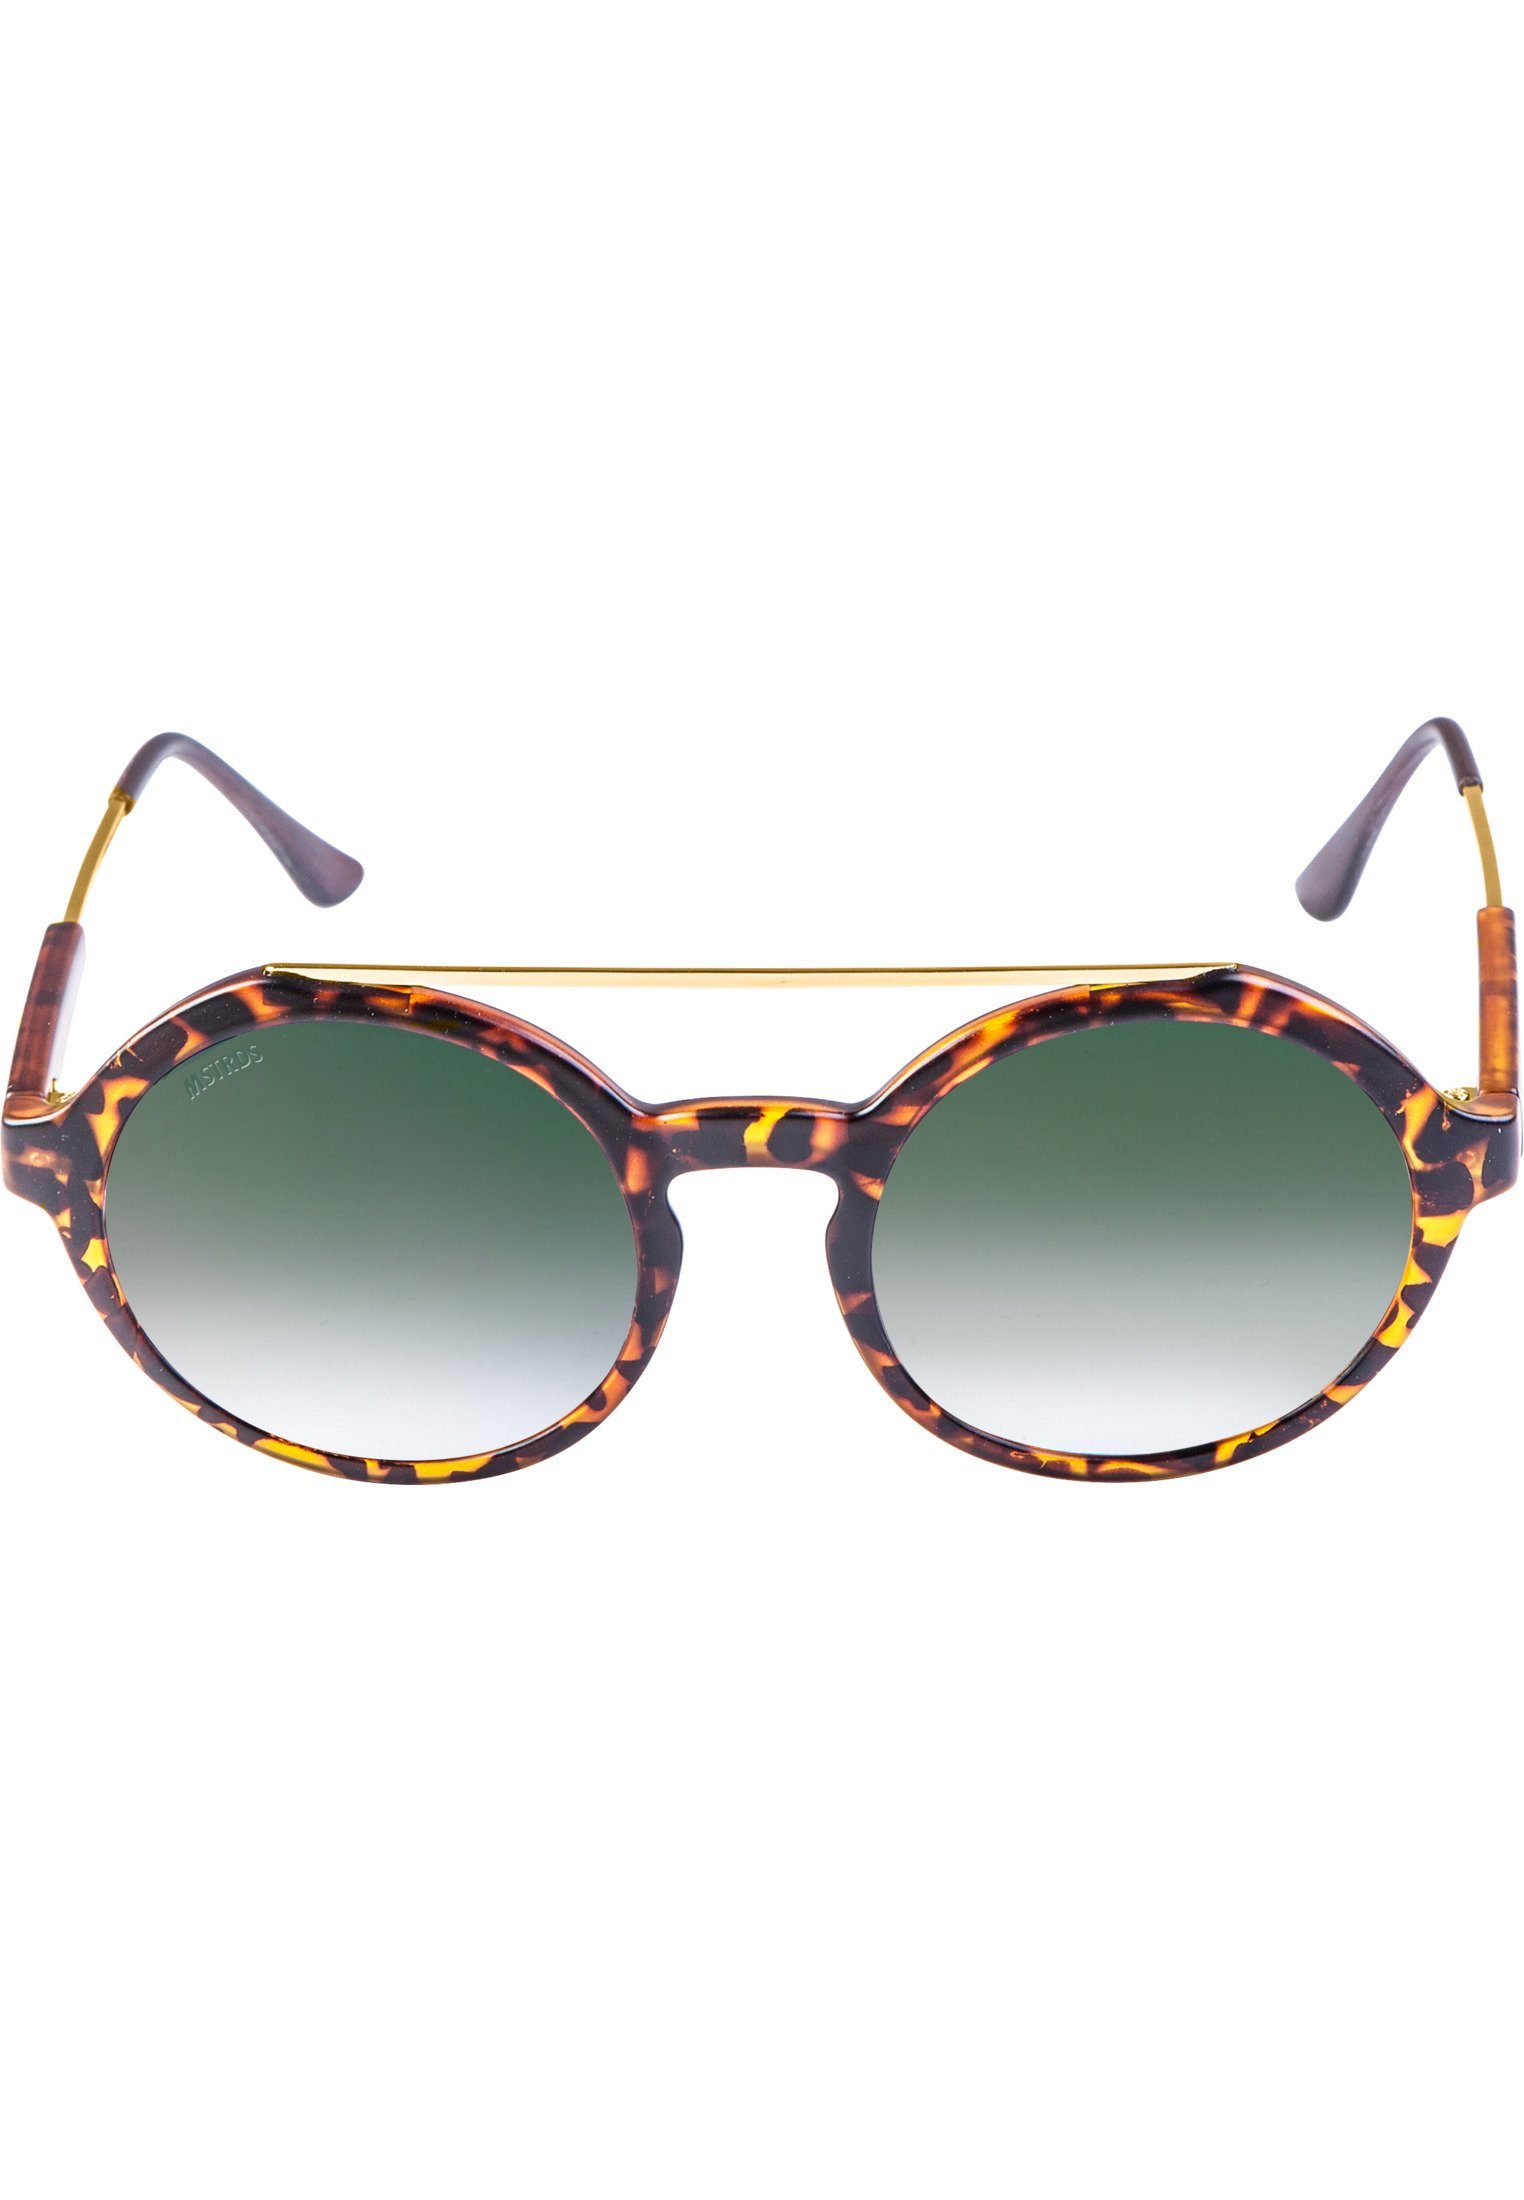 MSTRDS Sonnenbrille Accessoires Sunglasses Retro Space havanna/green